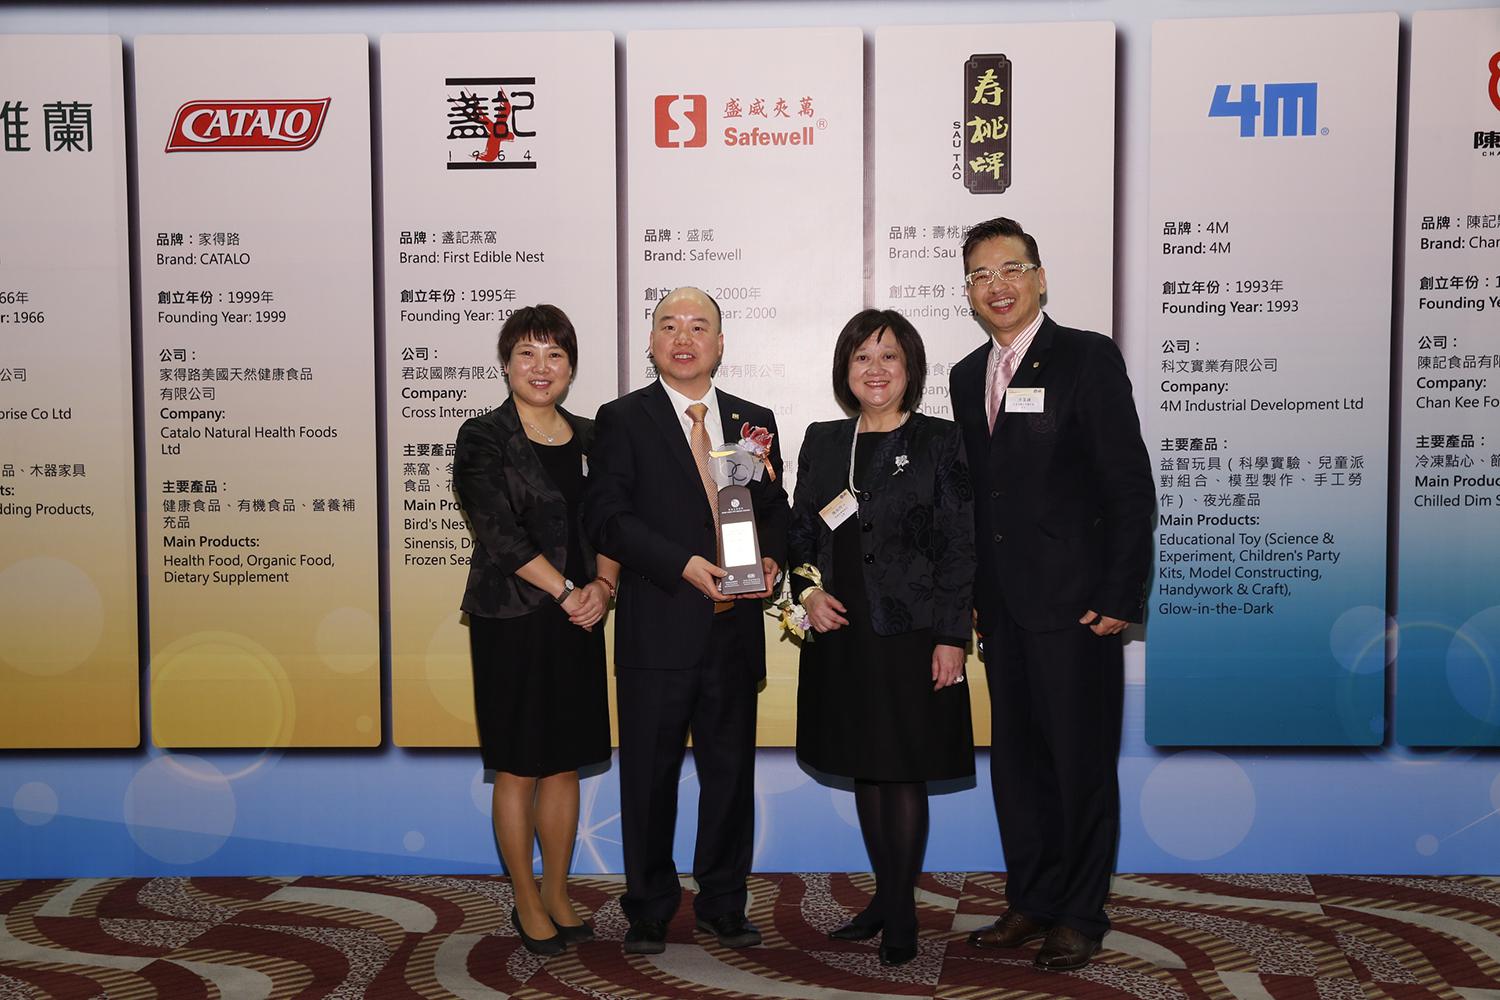 2012年11月徐普南先生、郑秀君女士出席香港品牌荣誉授予仪式.JPG